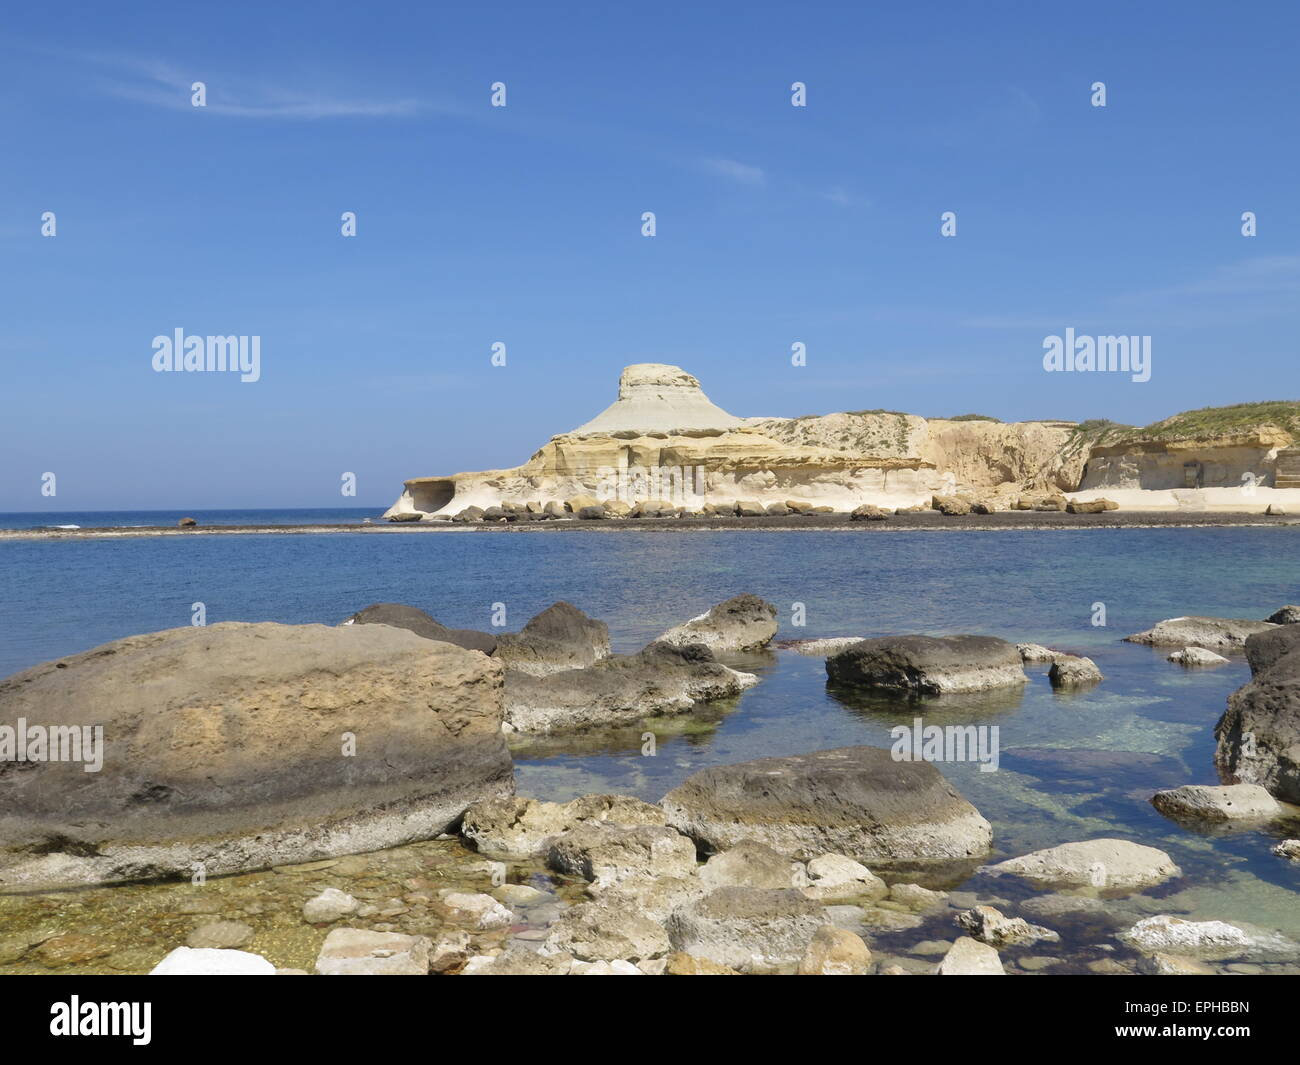 La baie de Marsalforn, Gozo, Malte Banque D'Images